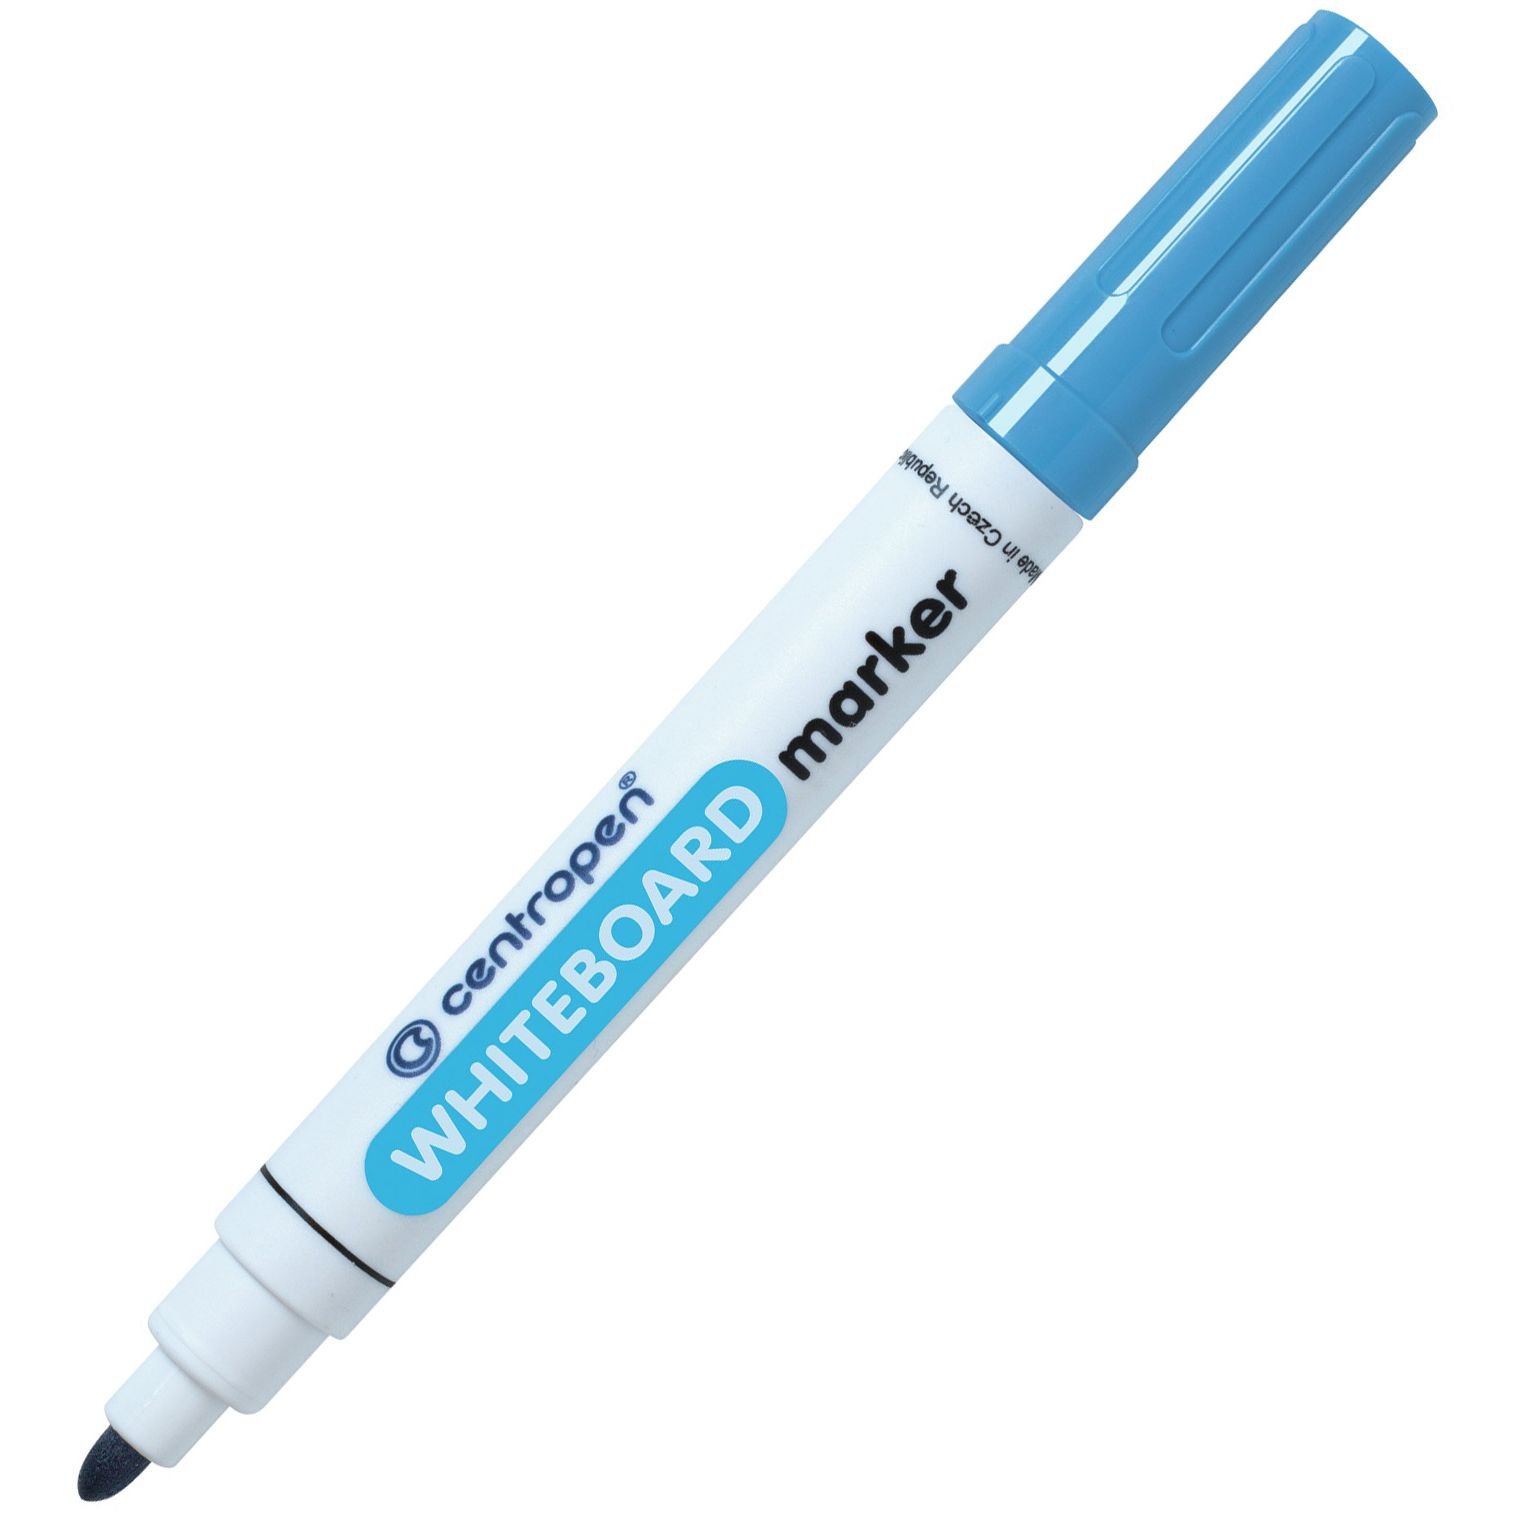 Маркер для досок Centropen WhiteBoard конусообразный 2.5 мм синий (8559/03) - фото 1